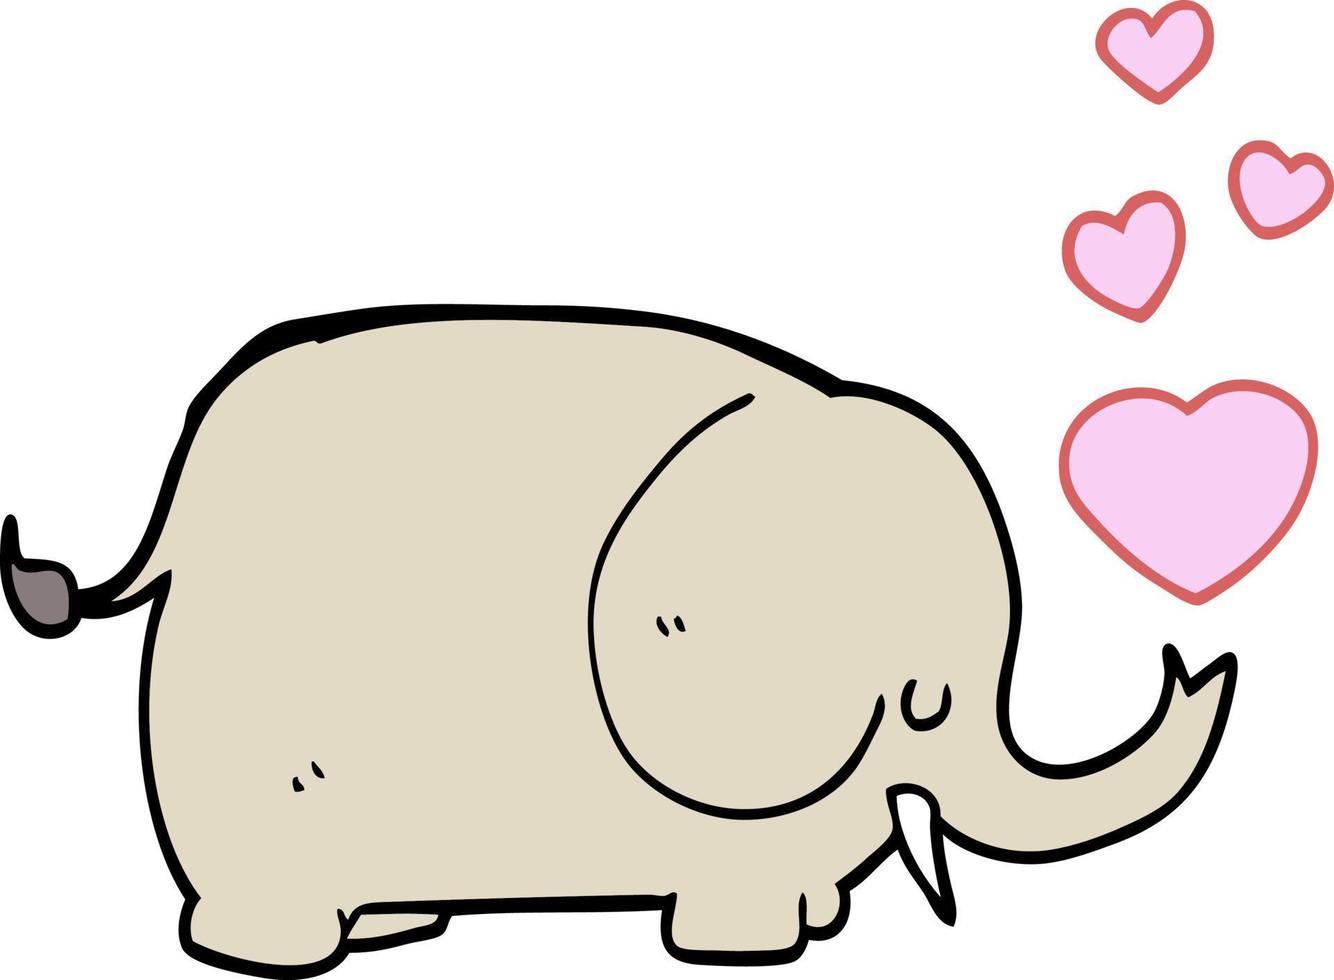 cute cartoon elephant with love hearts vector